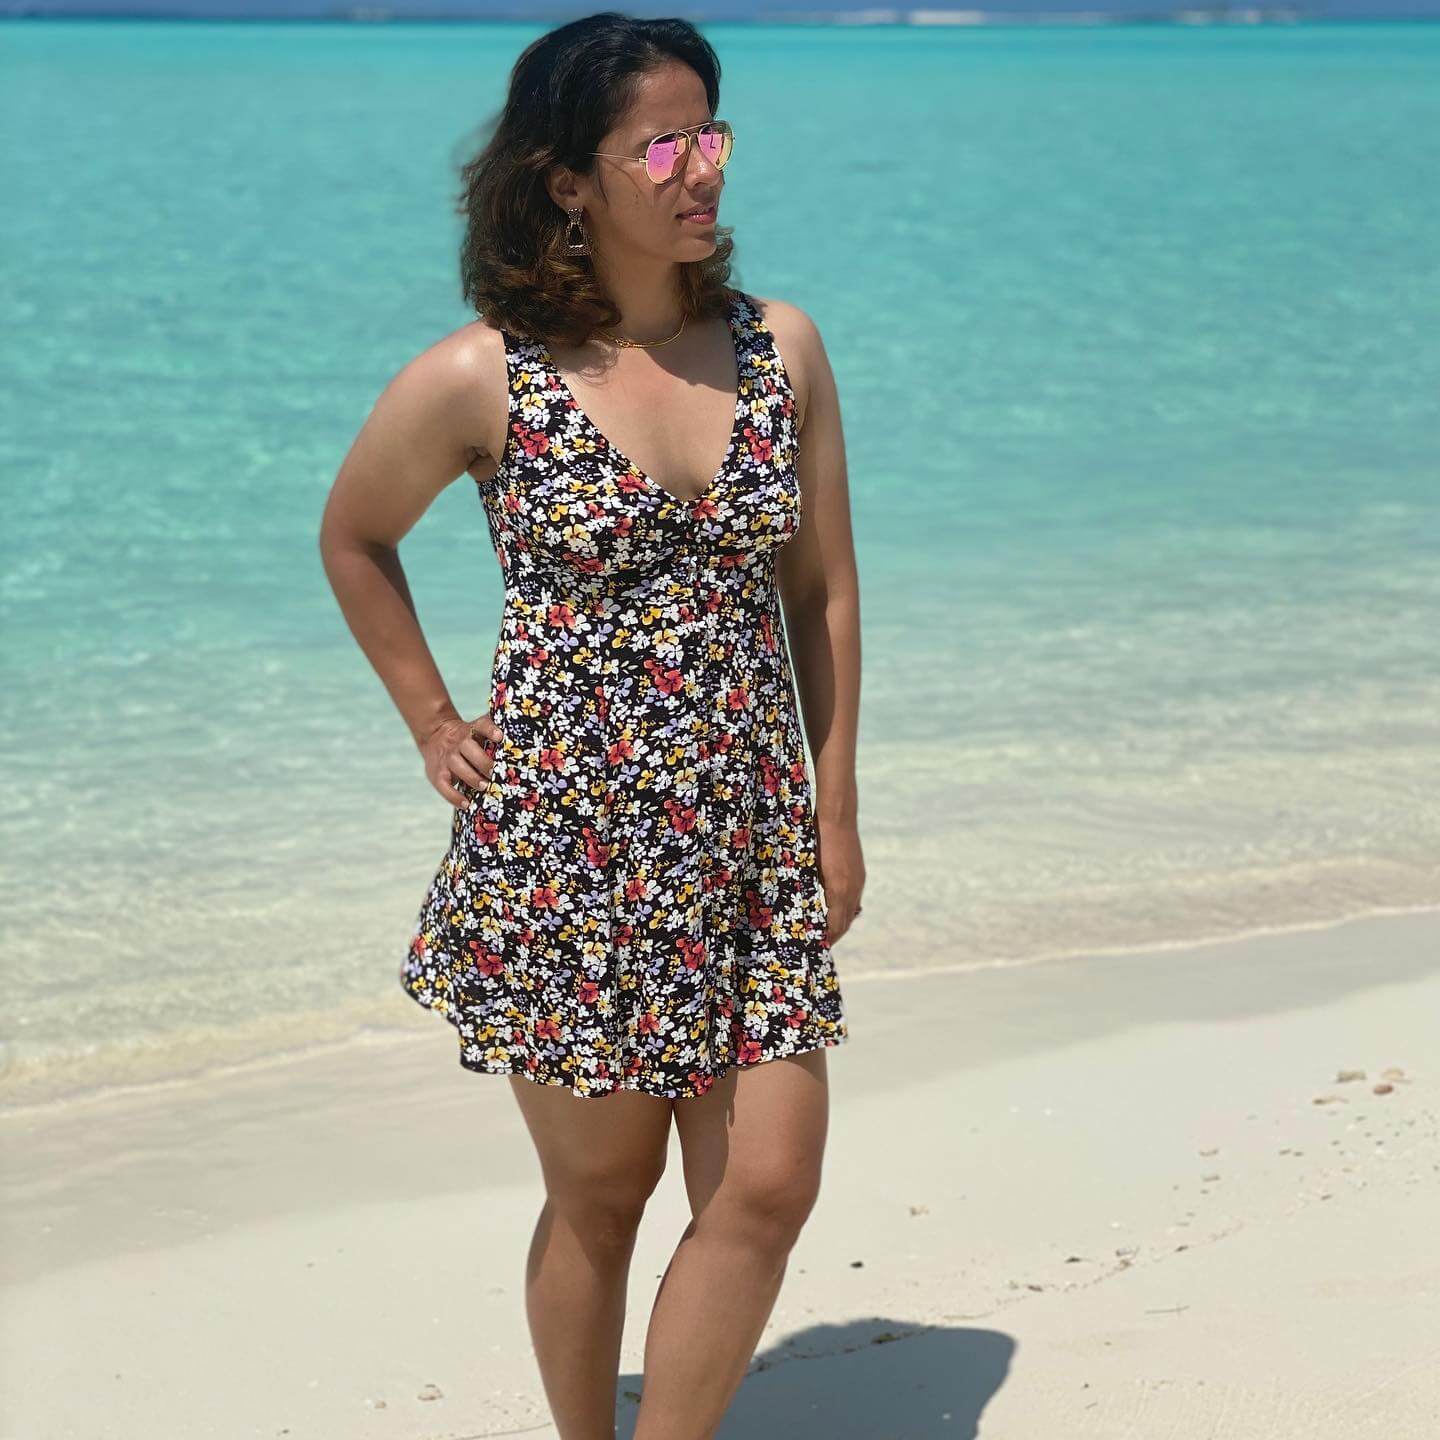 साइना नेहवाल के शोर्ट मिनी ड्रेस लुक पर फैंस हुए दीवाने‌, देखें तस्वीर 23536